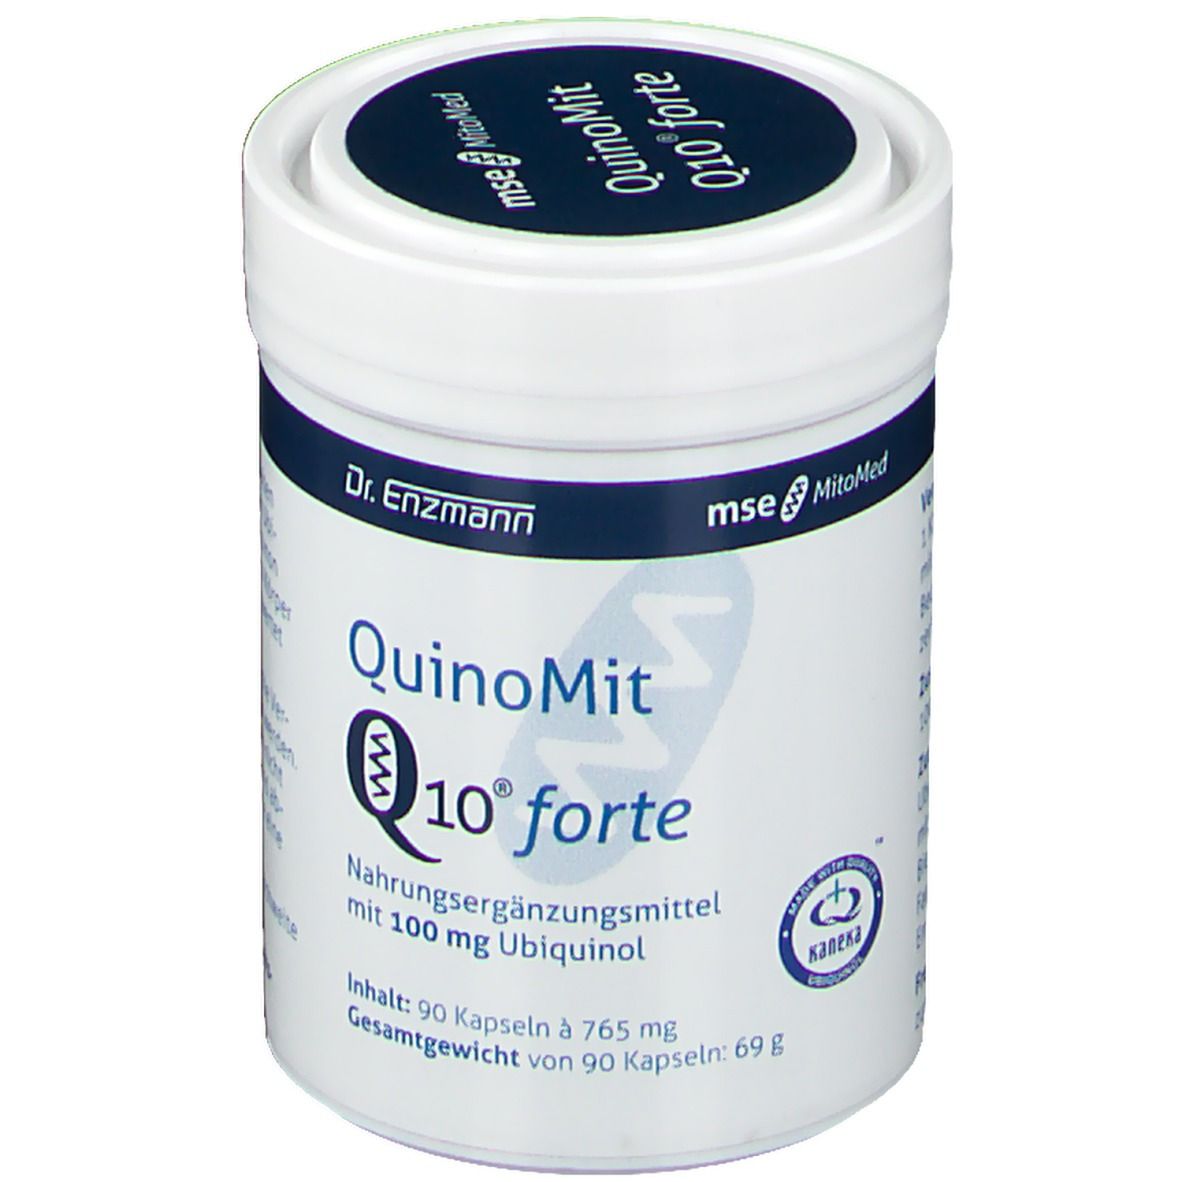 QuinoMit Q10® forte